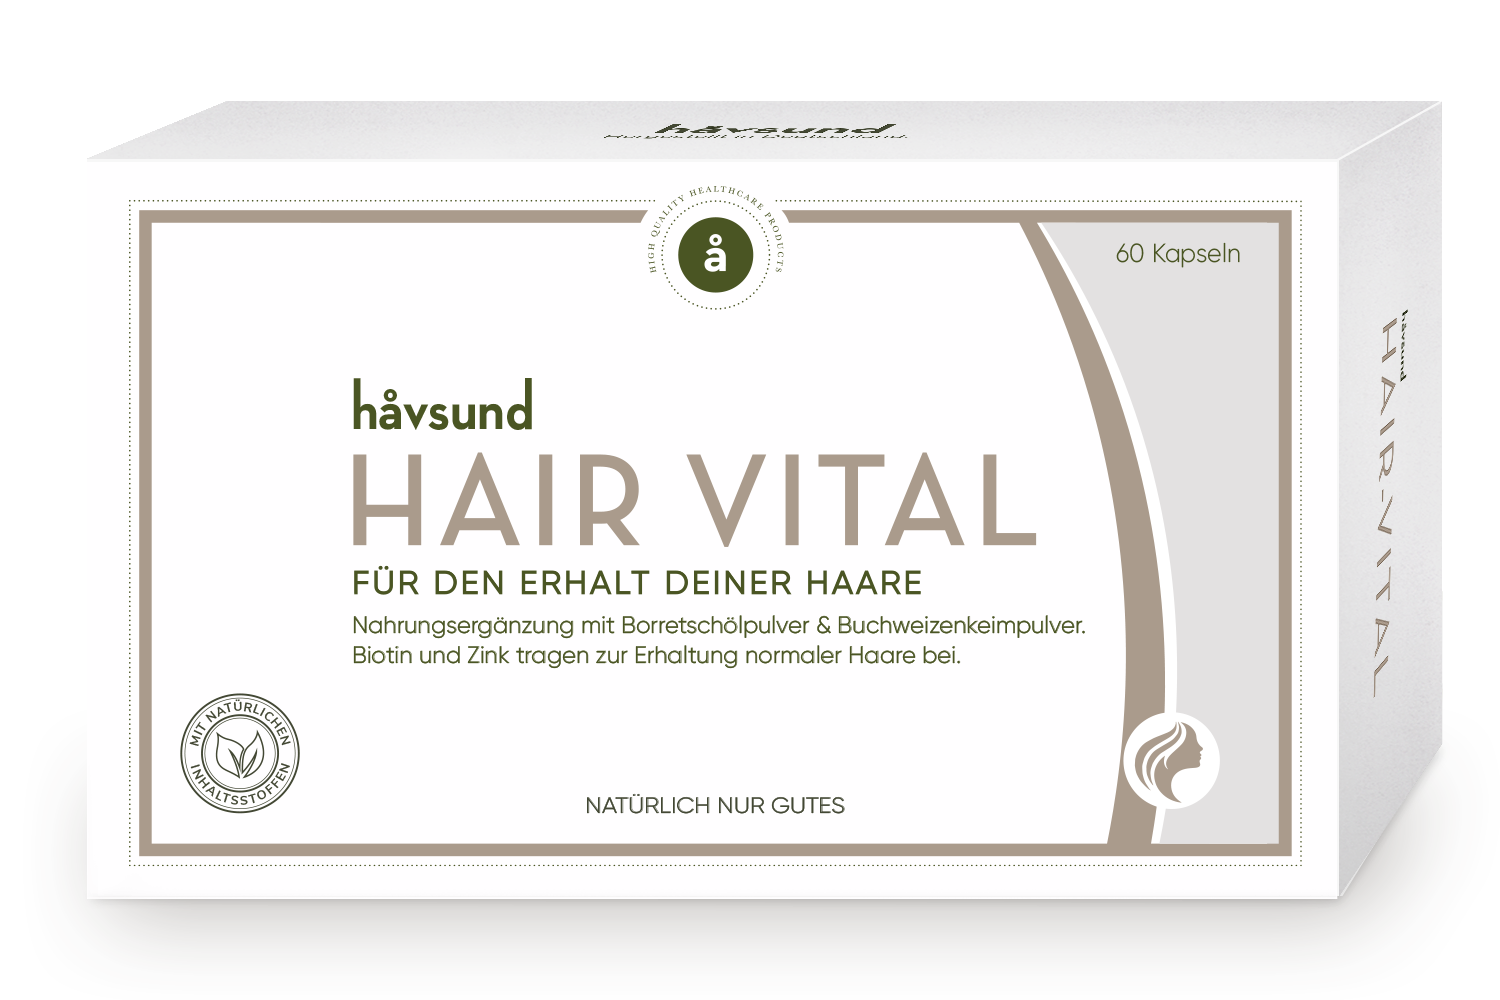 håvsund Hair-Vital product image with ingredients